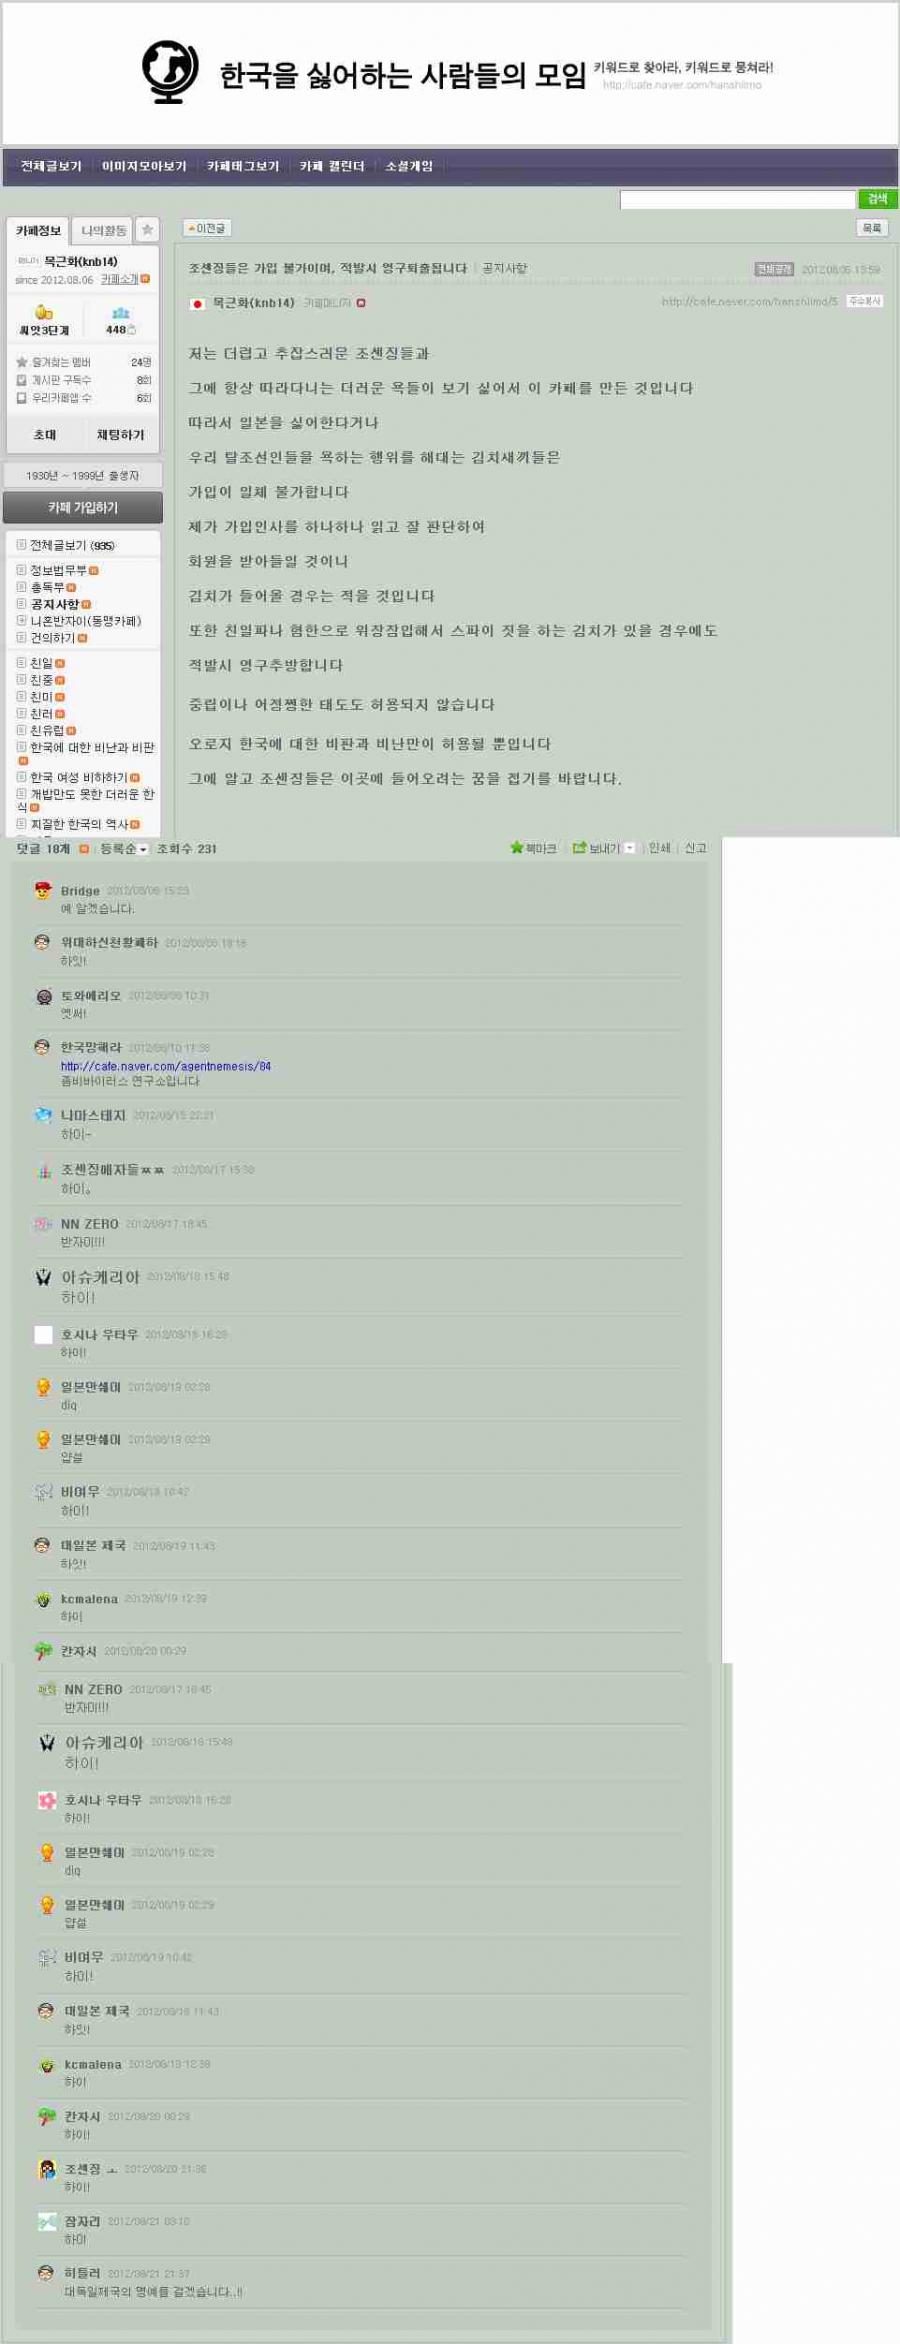 1 (1).jpg : 한국을 싫어하는 사람들의 모임.JPG